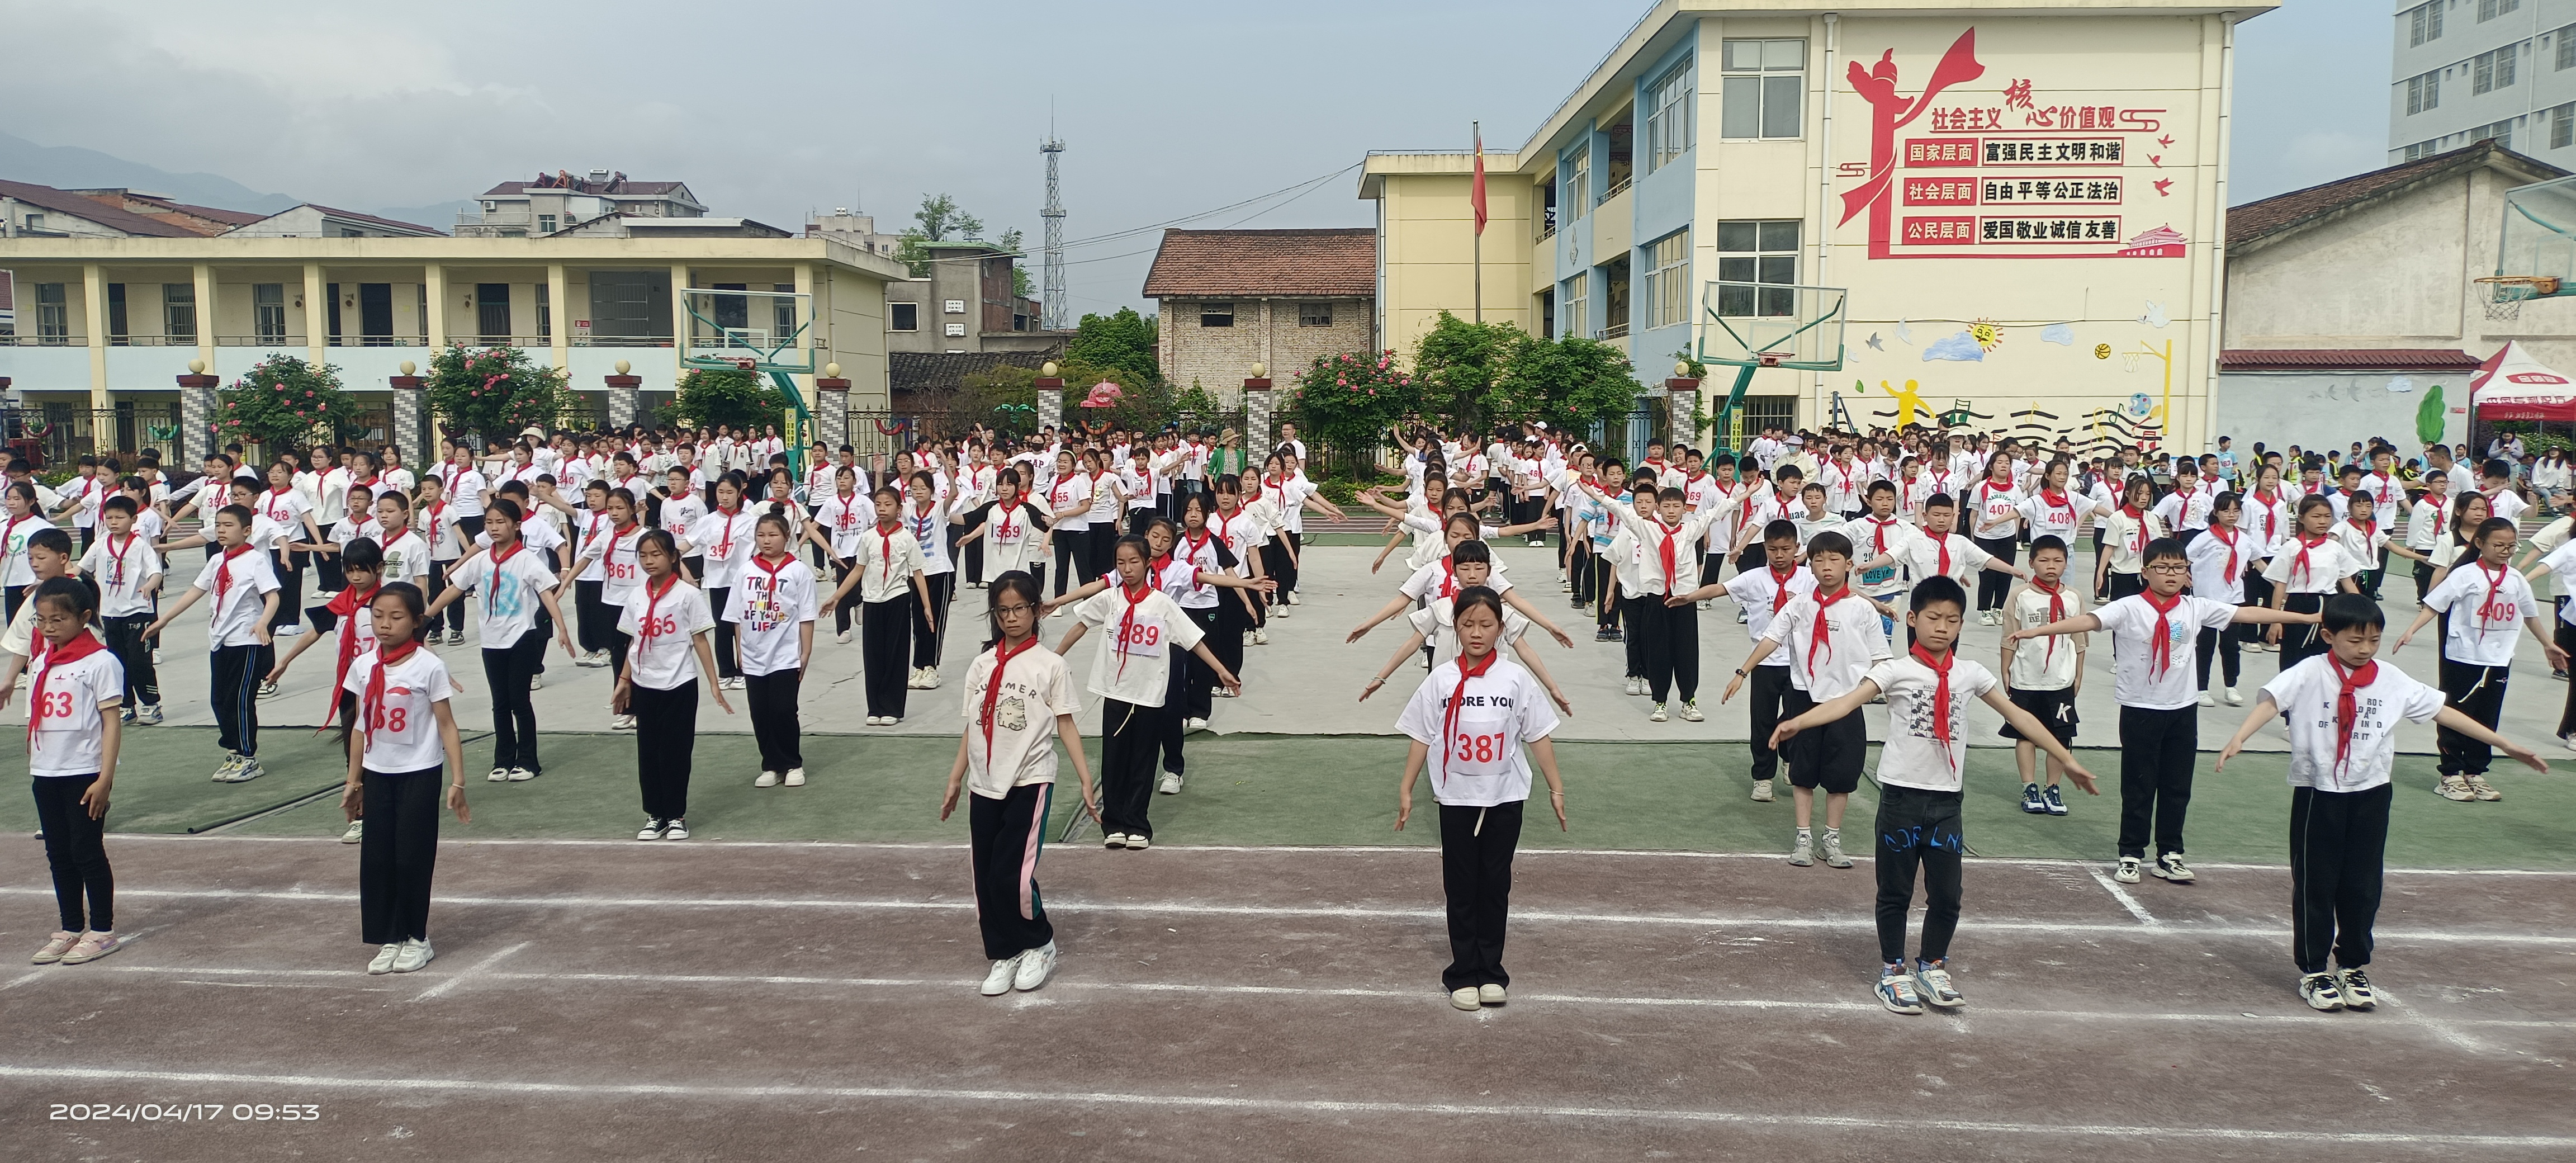 汉阴县平梁镇中心小学举行课间操比赛